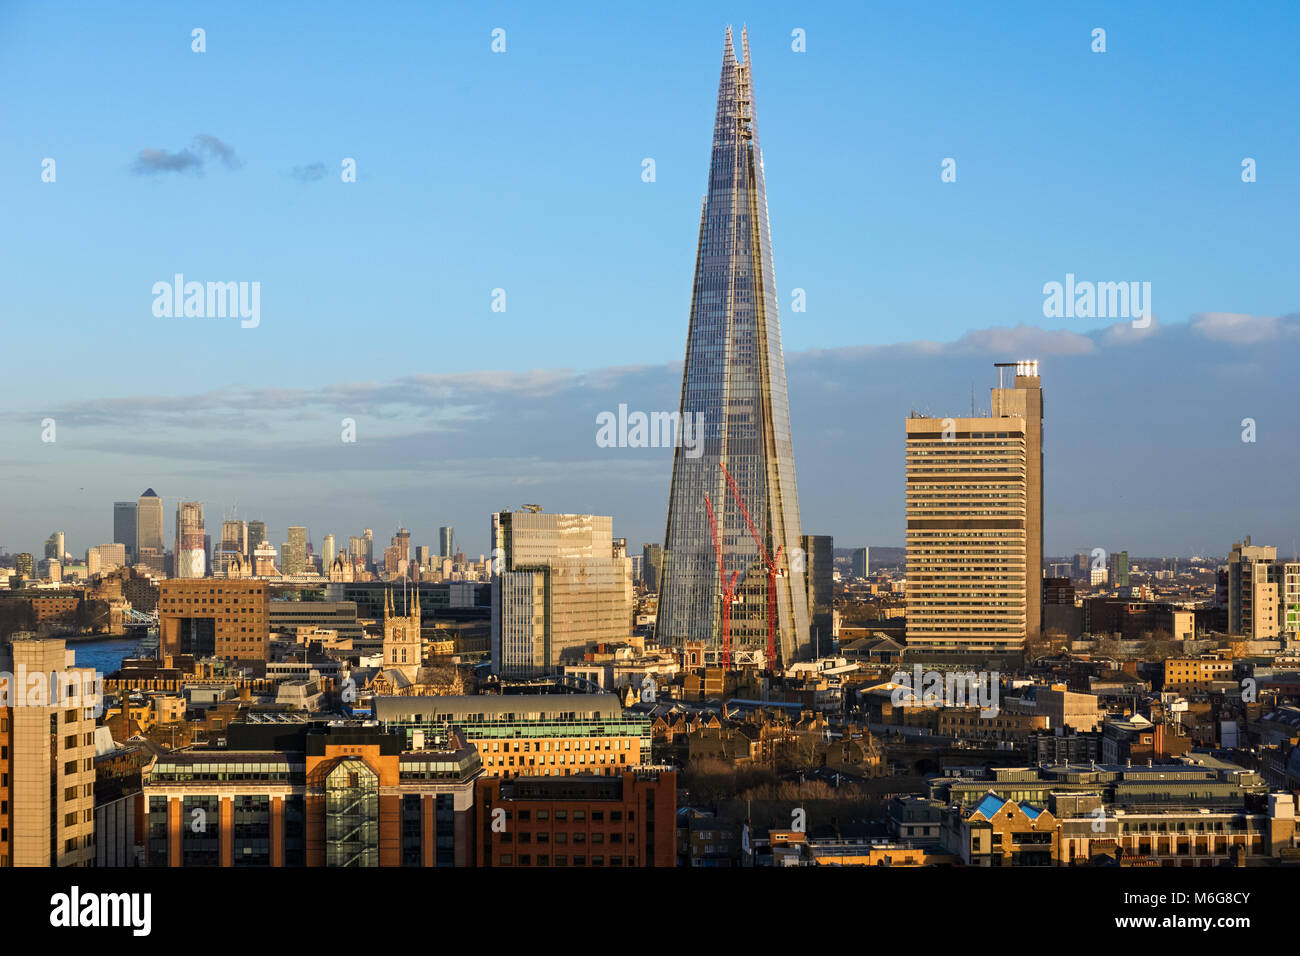 Vue panoramique de Londres avec le gratte-ciel Shard, Angleterre Royaume-Uni UK Banque D'Images